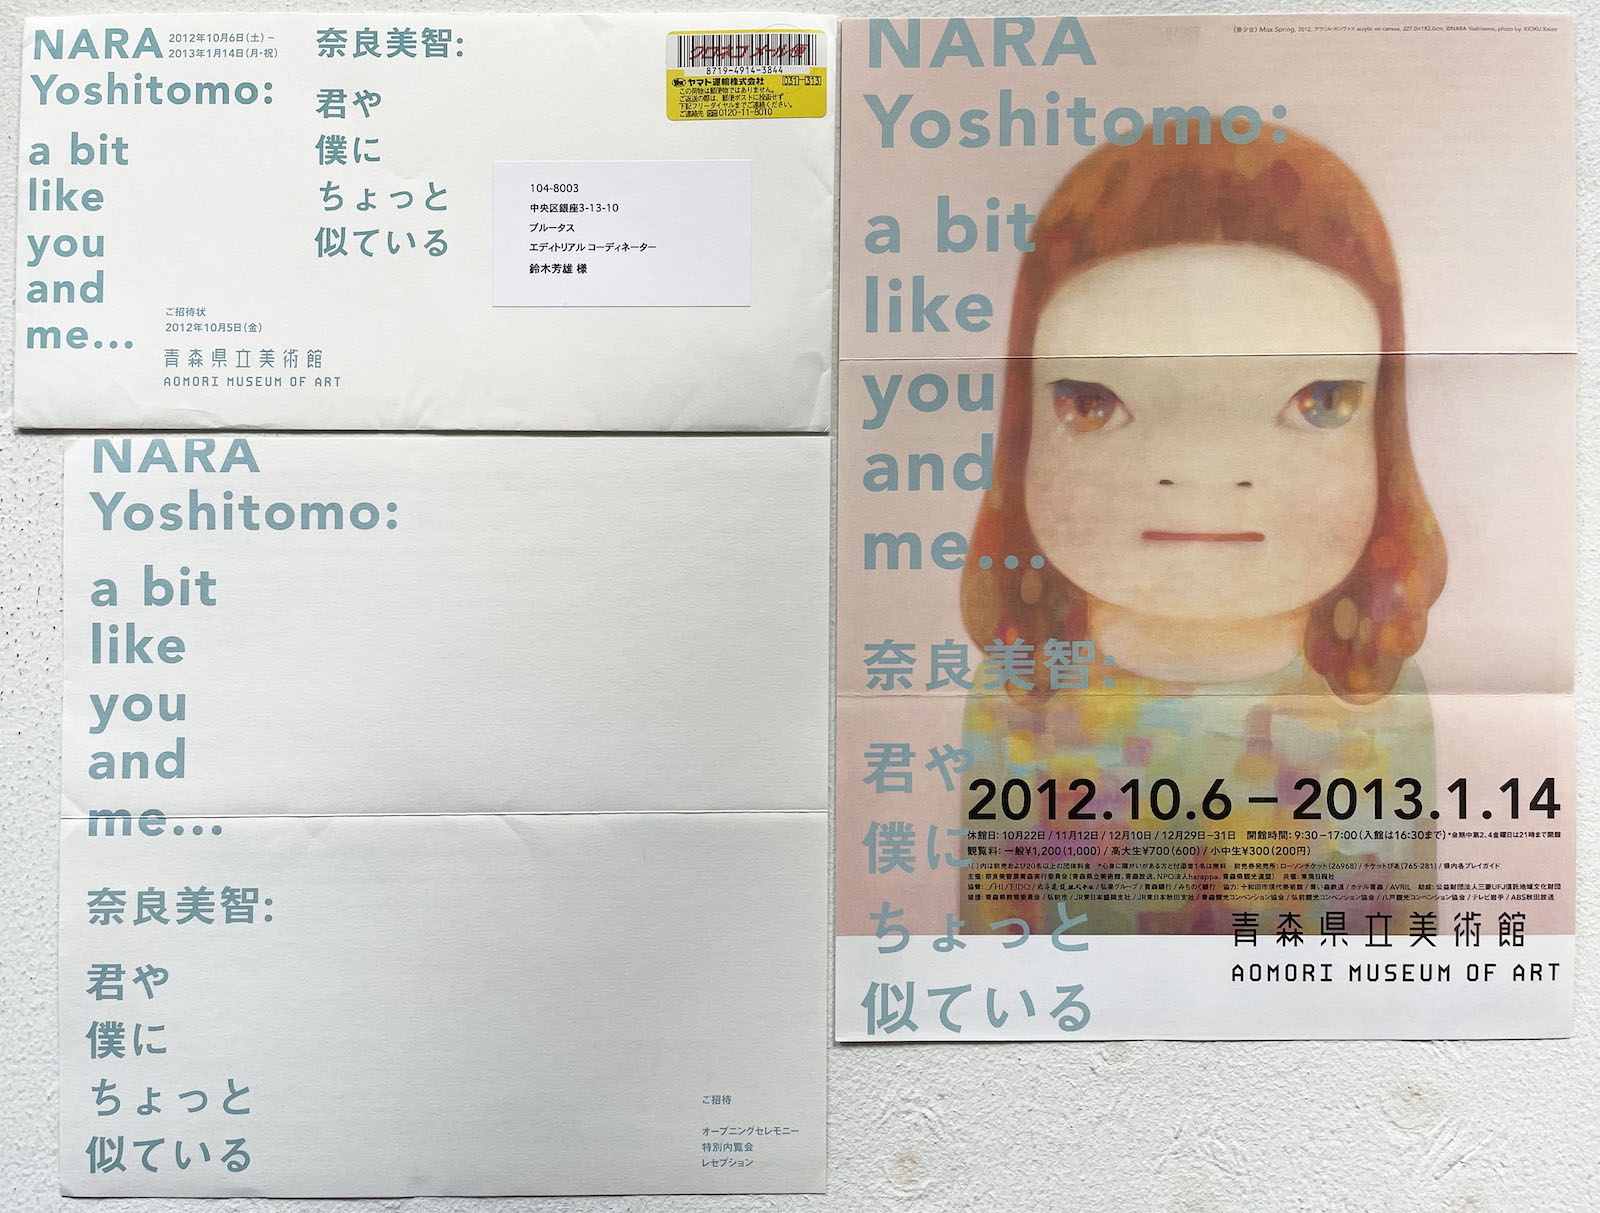 2012年、青森県立美術館「奈良美智: 君や僕にちょっと似ている」。横浜美術館からの巡回展だった。このあと、熊本市現代美術館に巡回した。奈良美智さんに関しては今年2023年秋、再び、青森県立美術館での大規模個展が予定されている。